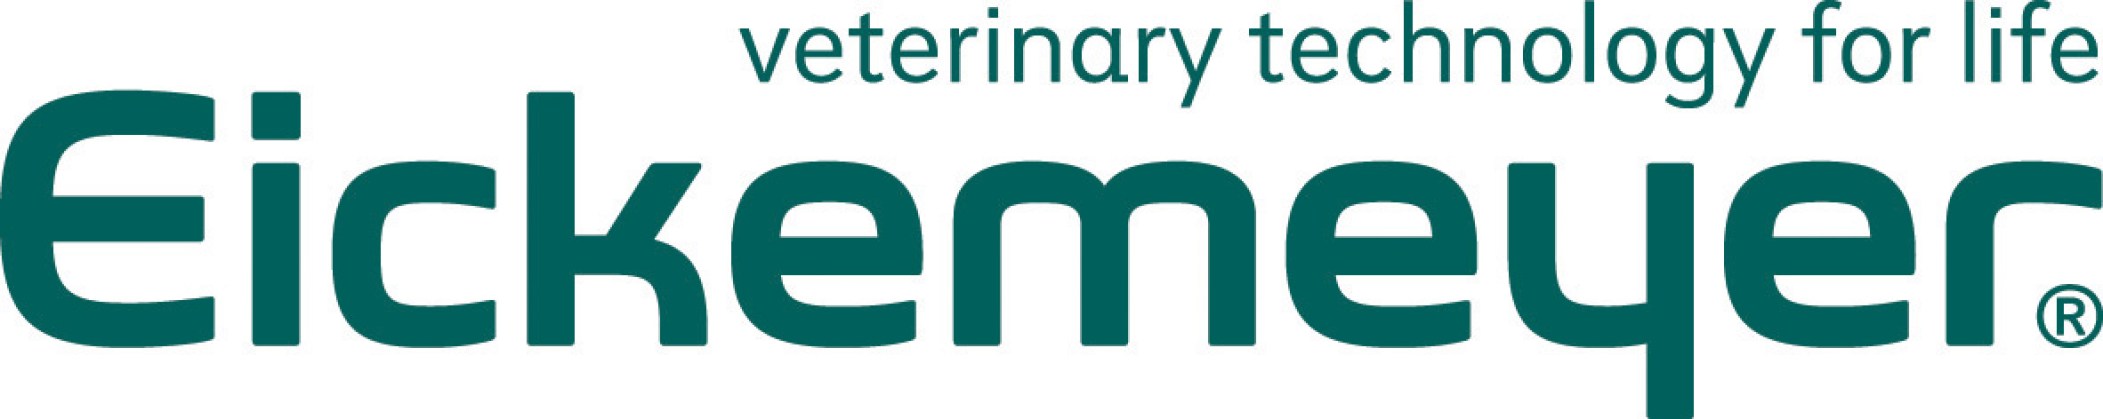 Eickemeyer-Logo2